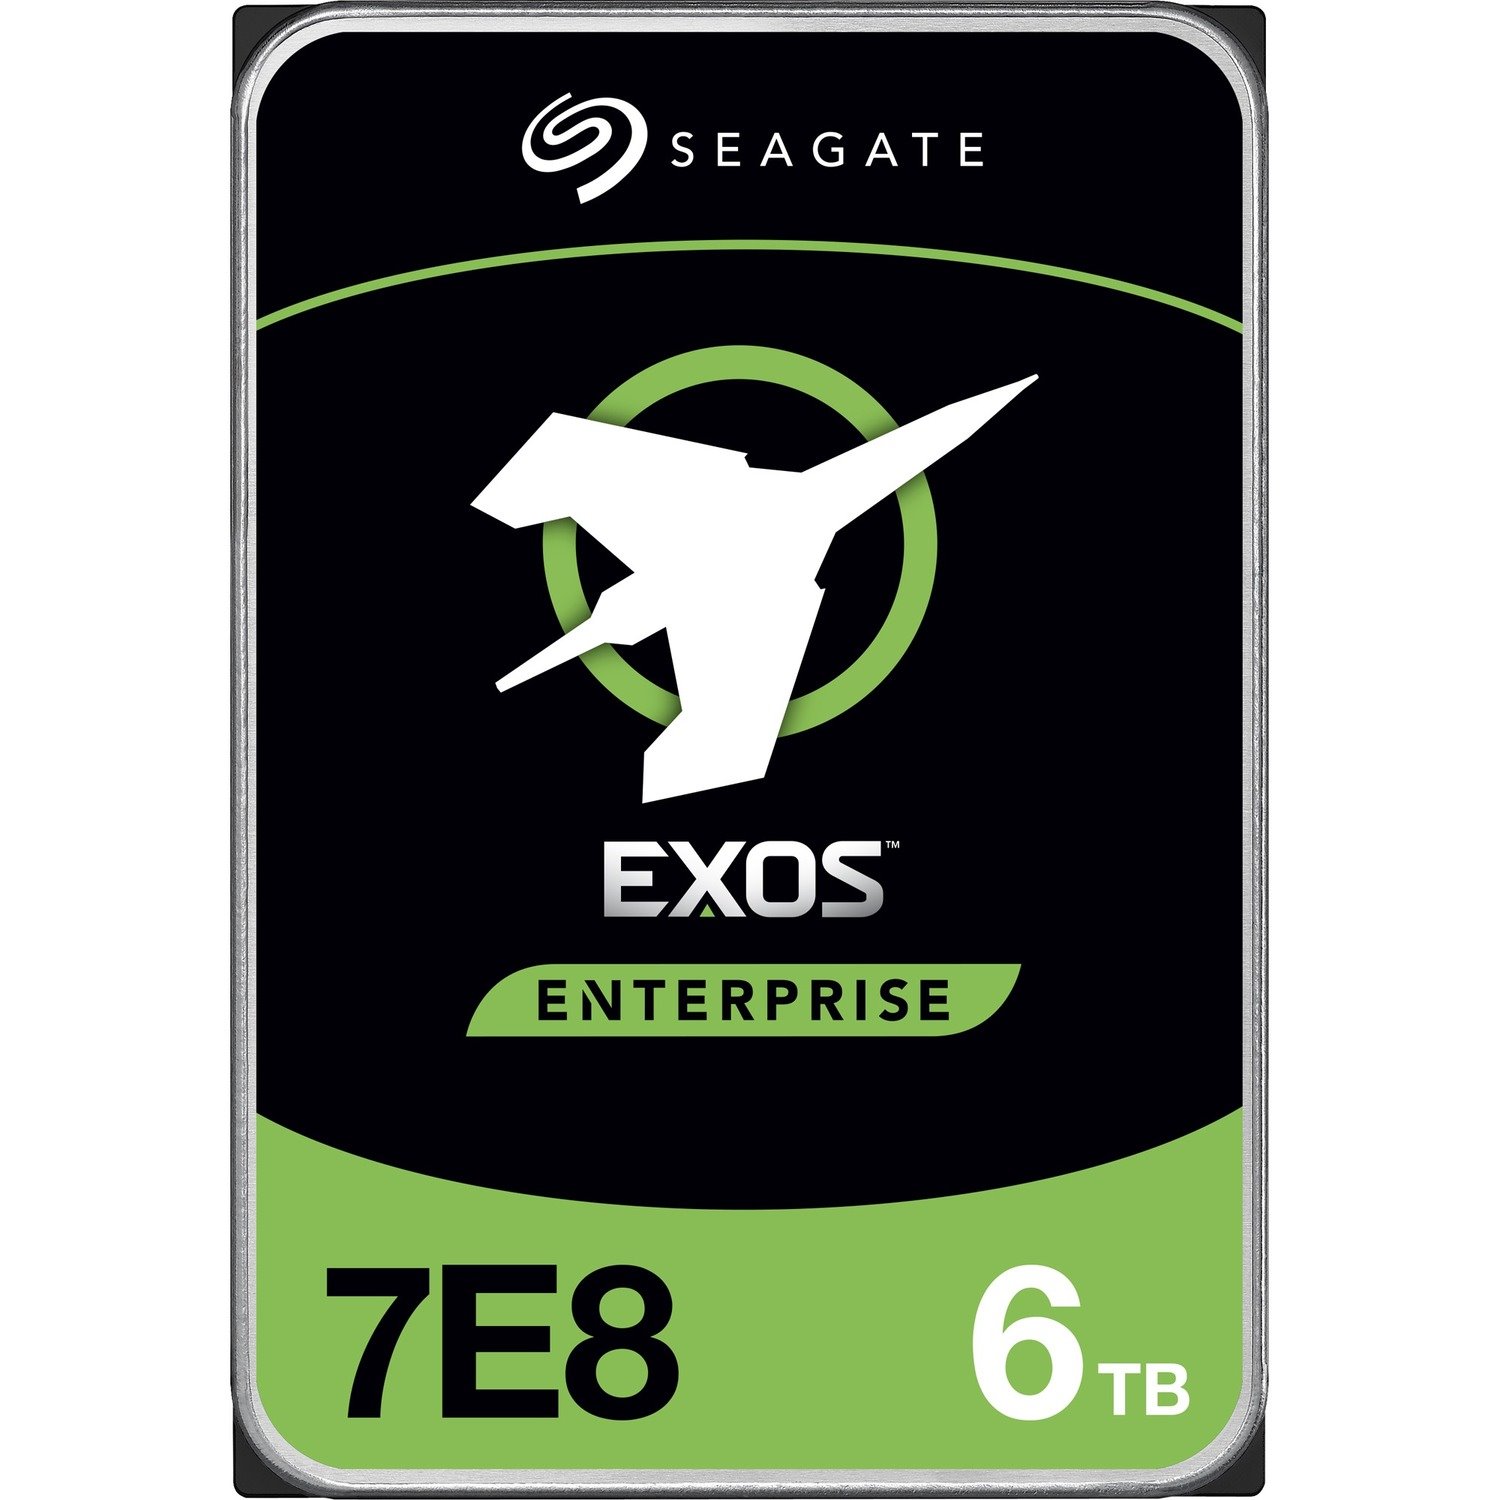 Seagate Exos 7E8 ST6000NM021A 6 TB Hard Drive - Internal - SATA (SATA/600)